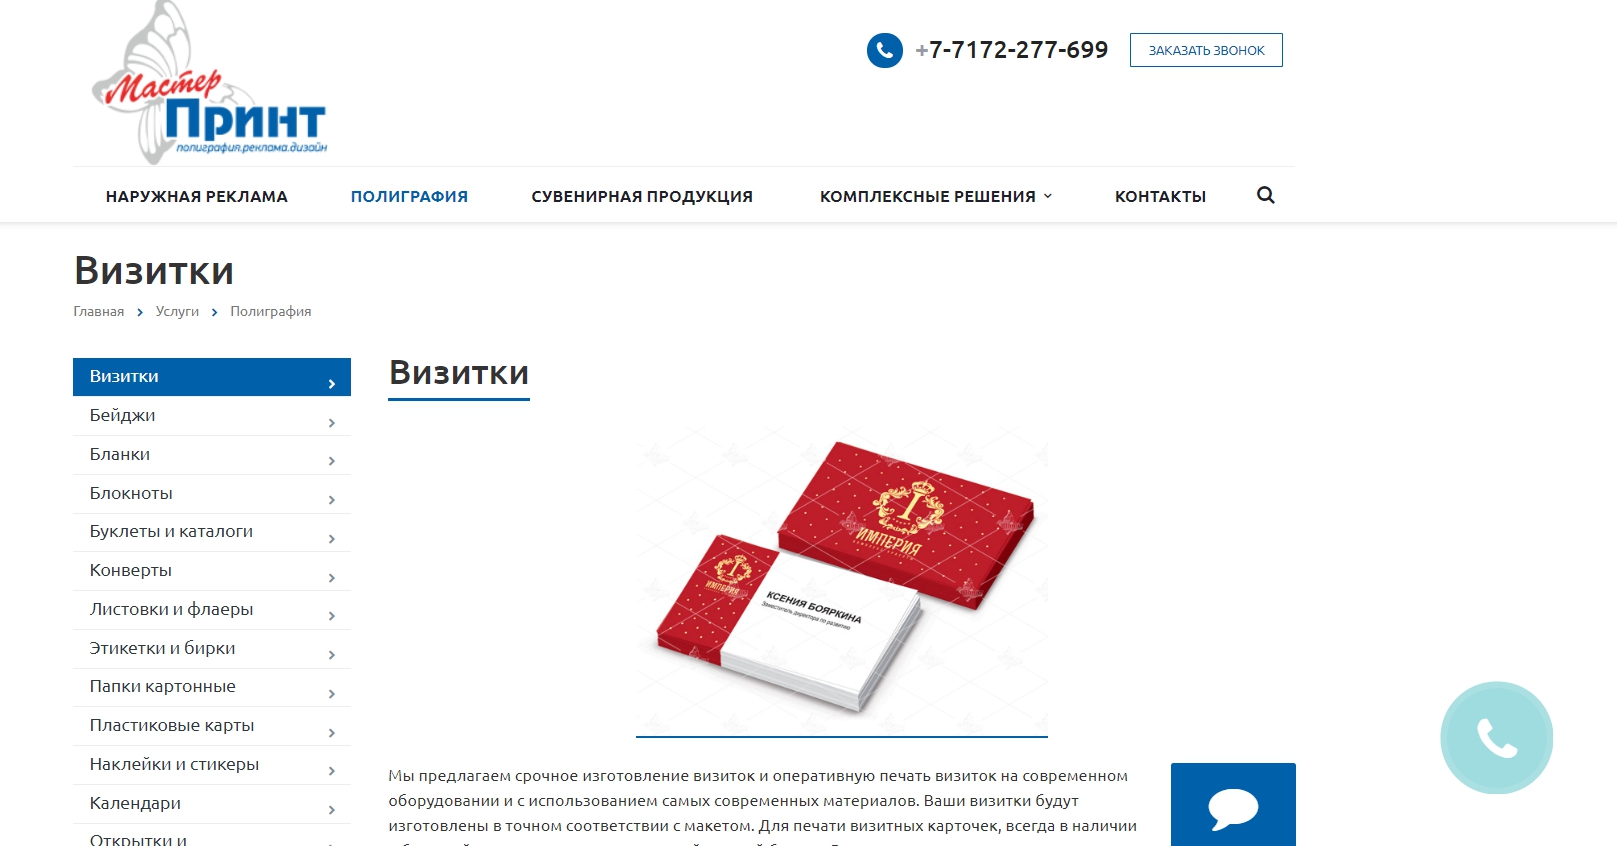 master-print.kz: услуги полиграфии, сувенирной продукции и рекламы